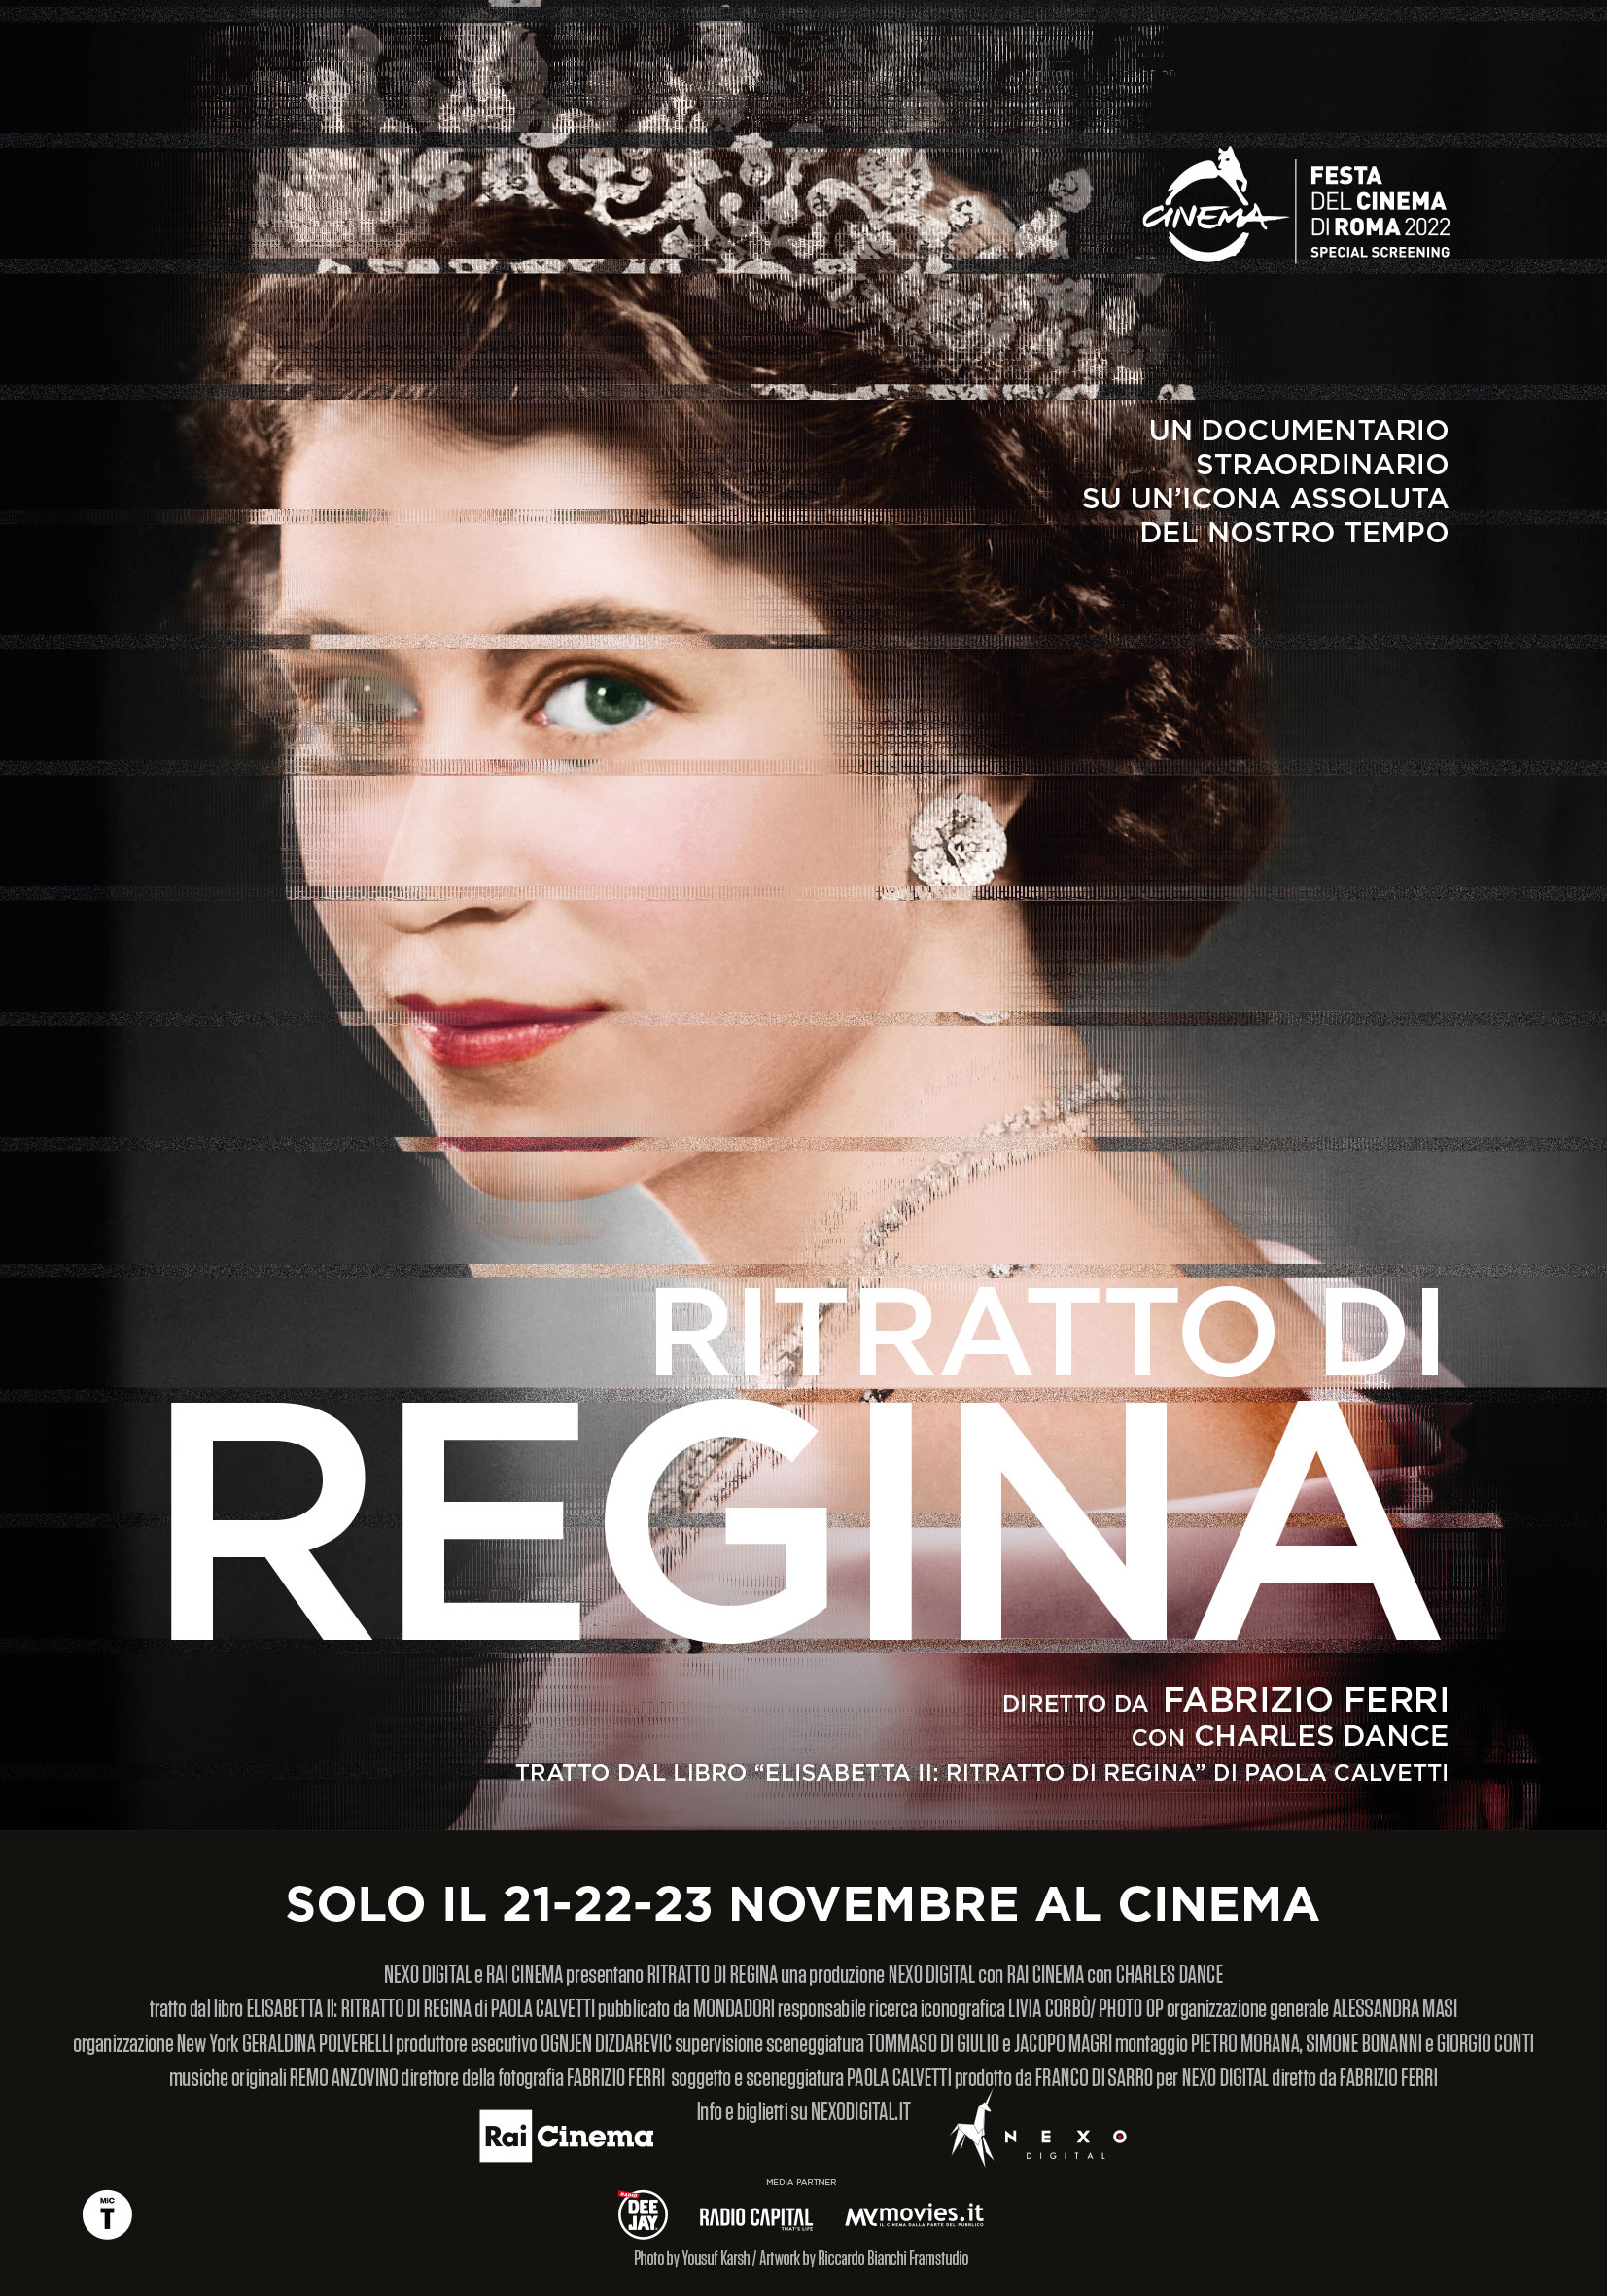 “RITRATTO DI REGINA”, il film evento diretto da Fabrizio Ferri 